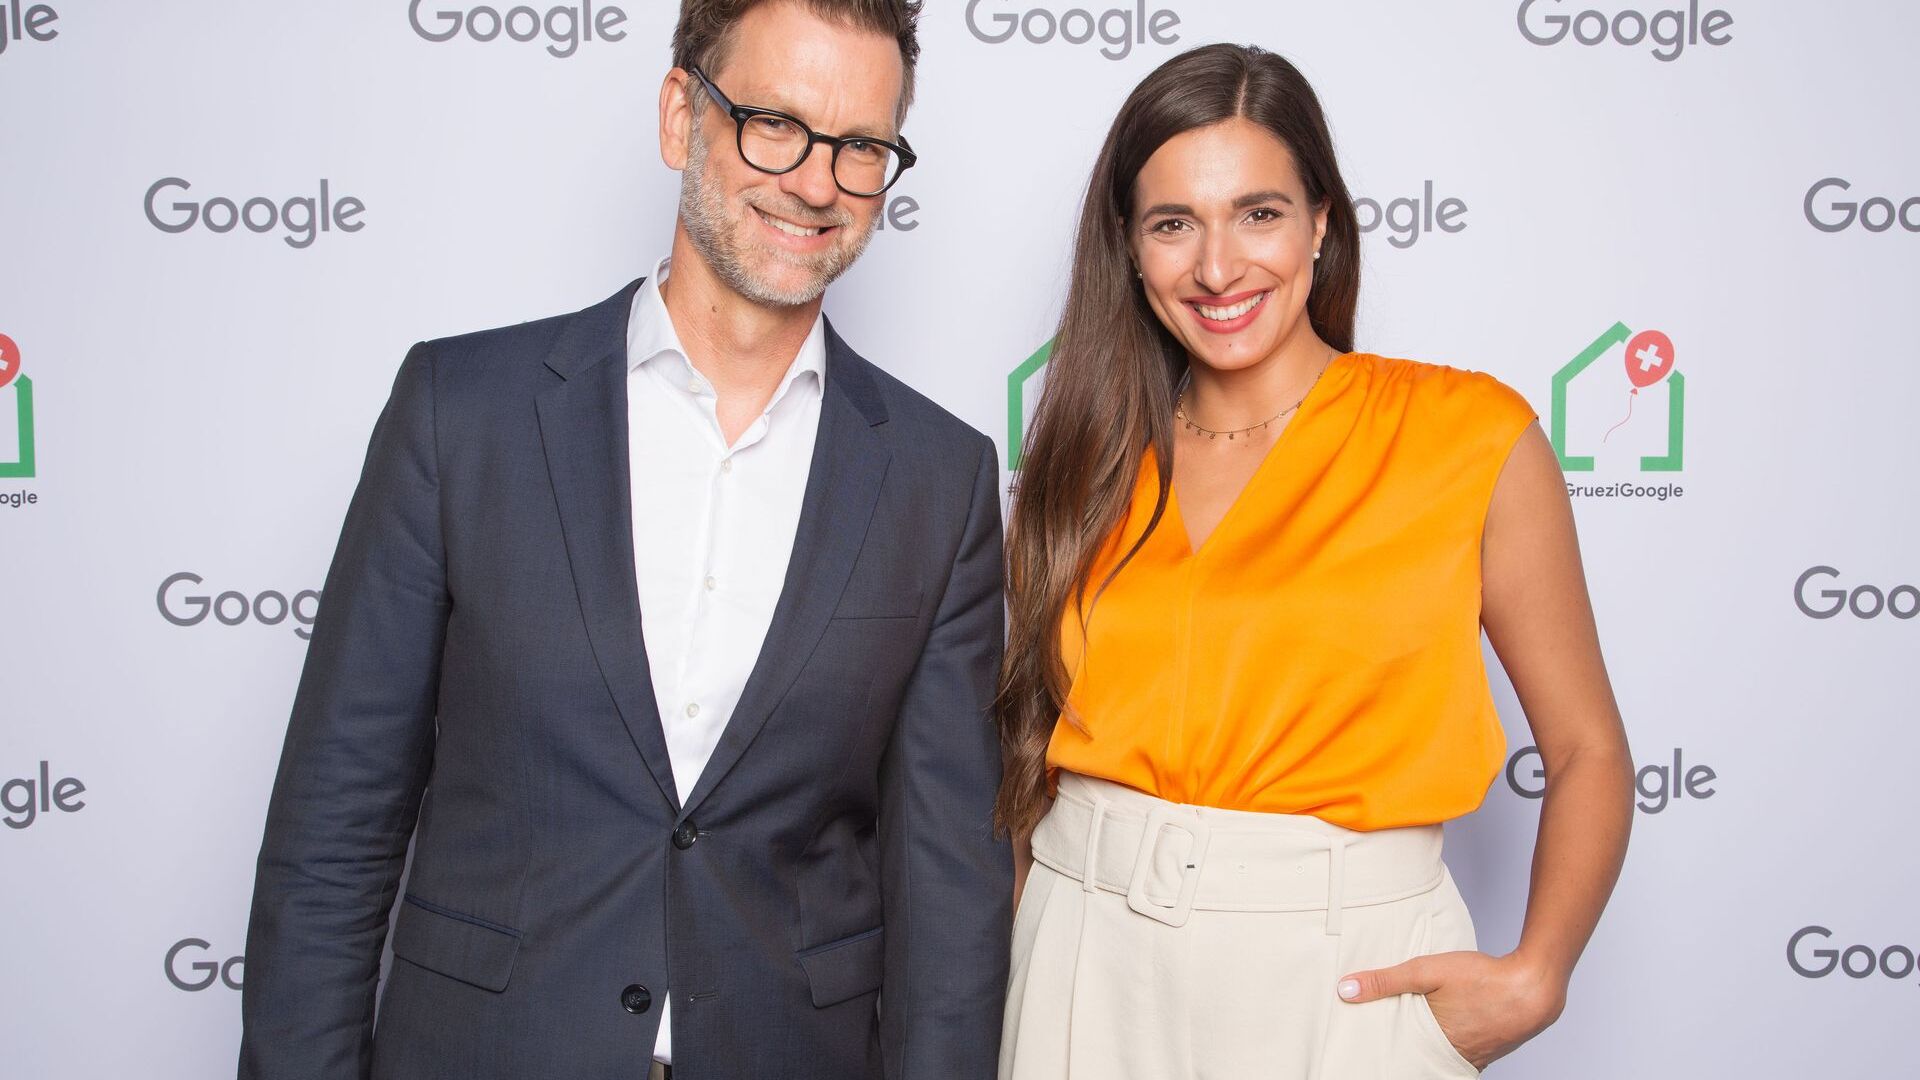 Andreas Briese, country riaditeľ YouTube pre Nemecko a regionálny riaditeľ pre strednú Európu, a Sally zo Sally's Welt (YouTube Channel) sa 27. júna 2022 zúčastnili na oficiálnom otvorení nového Google Campus Europaallee v Zürichu.